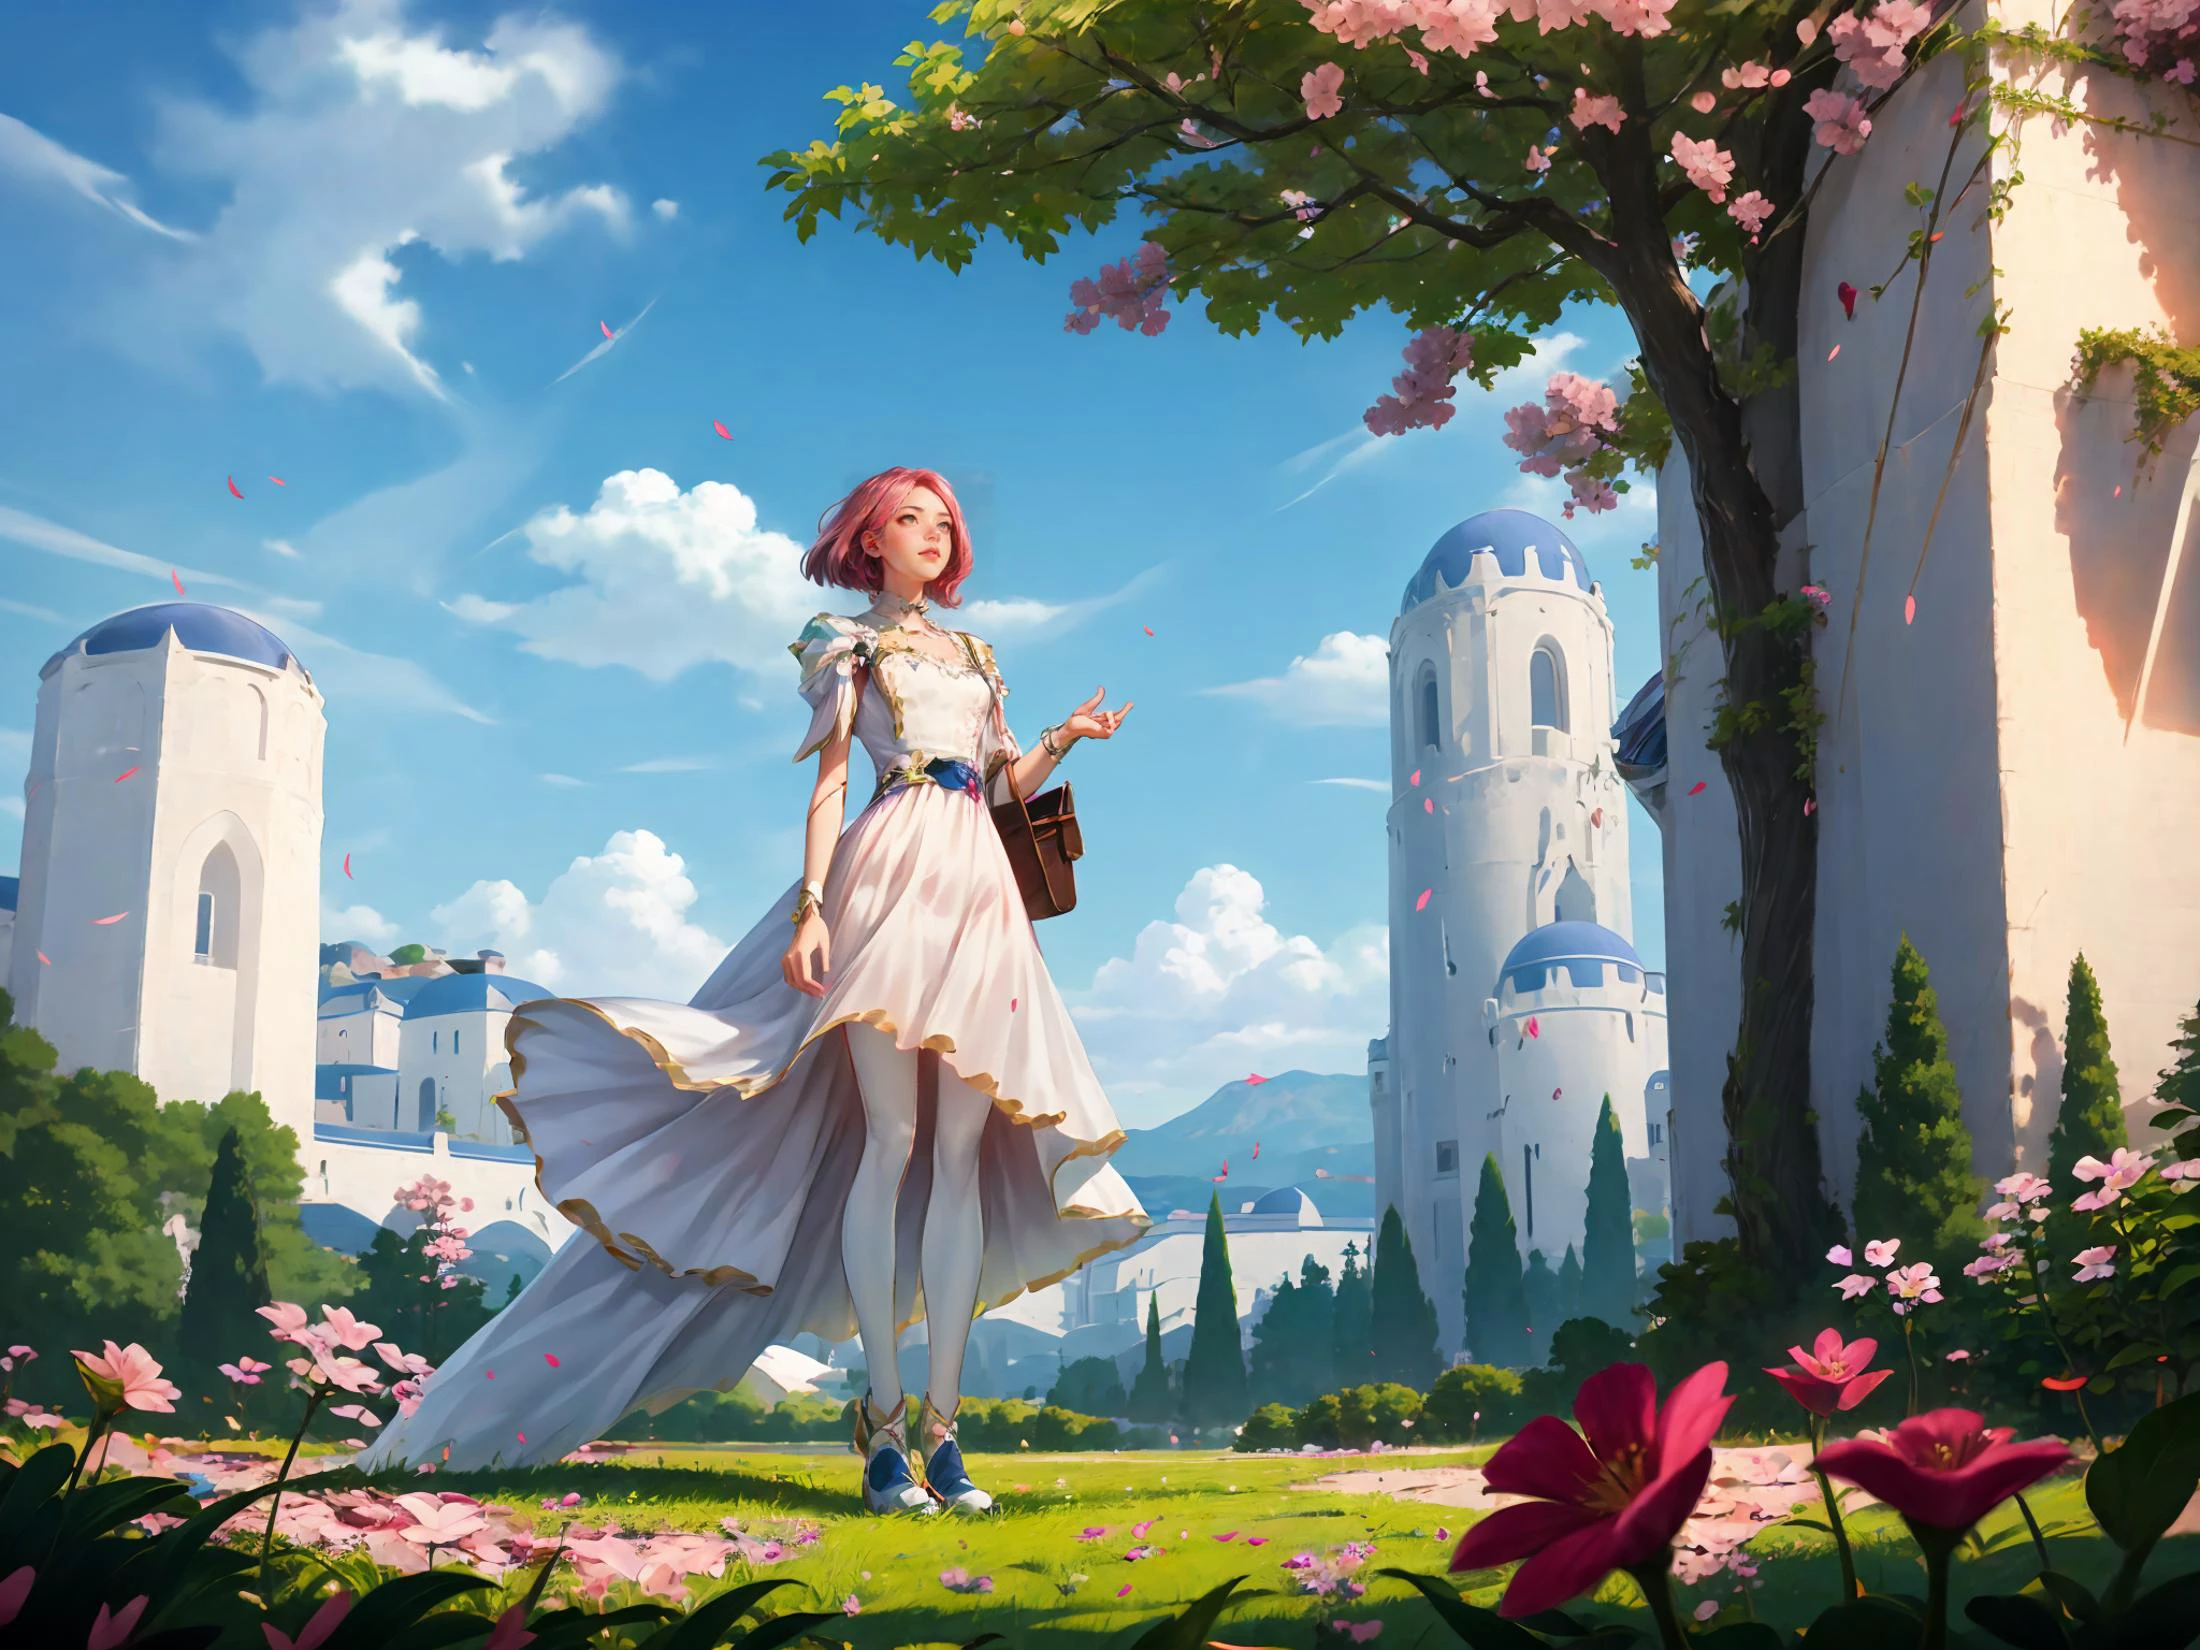 教育,哈哈,哈哈风格,遊戲CG,一位身穿白色连衣裙的女士站在一棵树前，树上有粉色的花朵，天空蔚蓝,吉田千津子,rossdraws全域照明,一幅詳細的畫作,